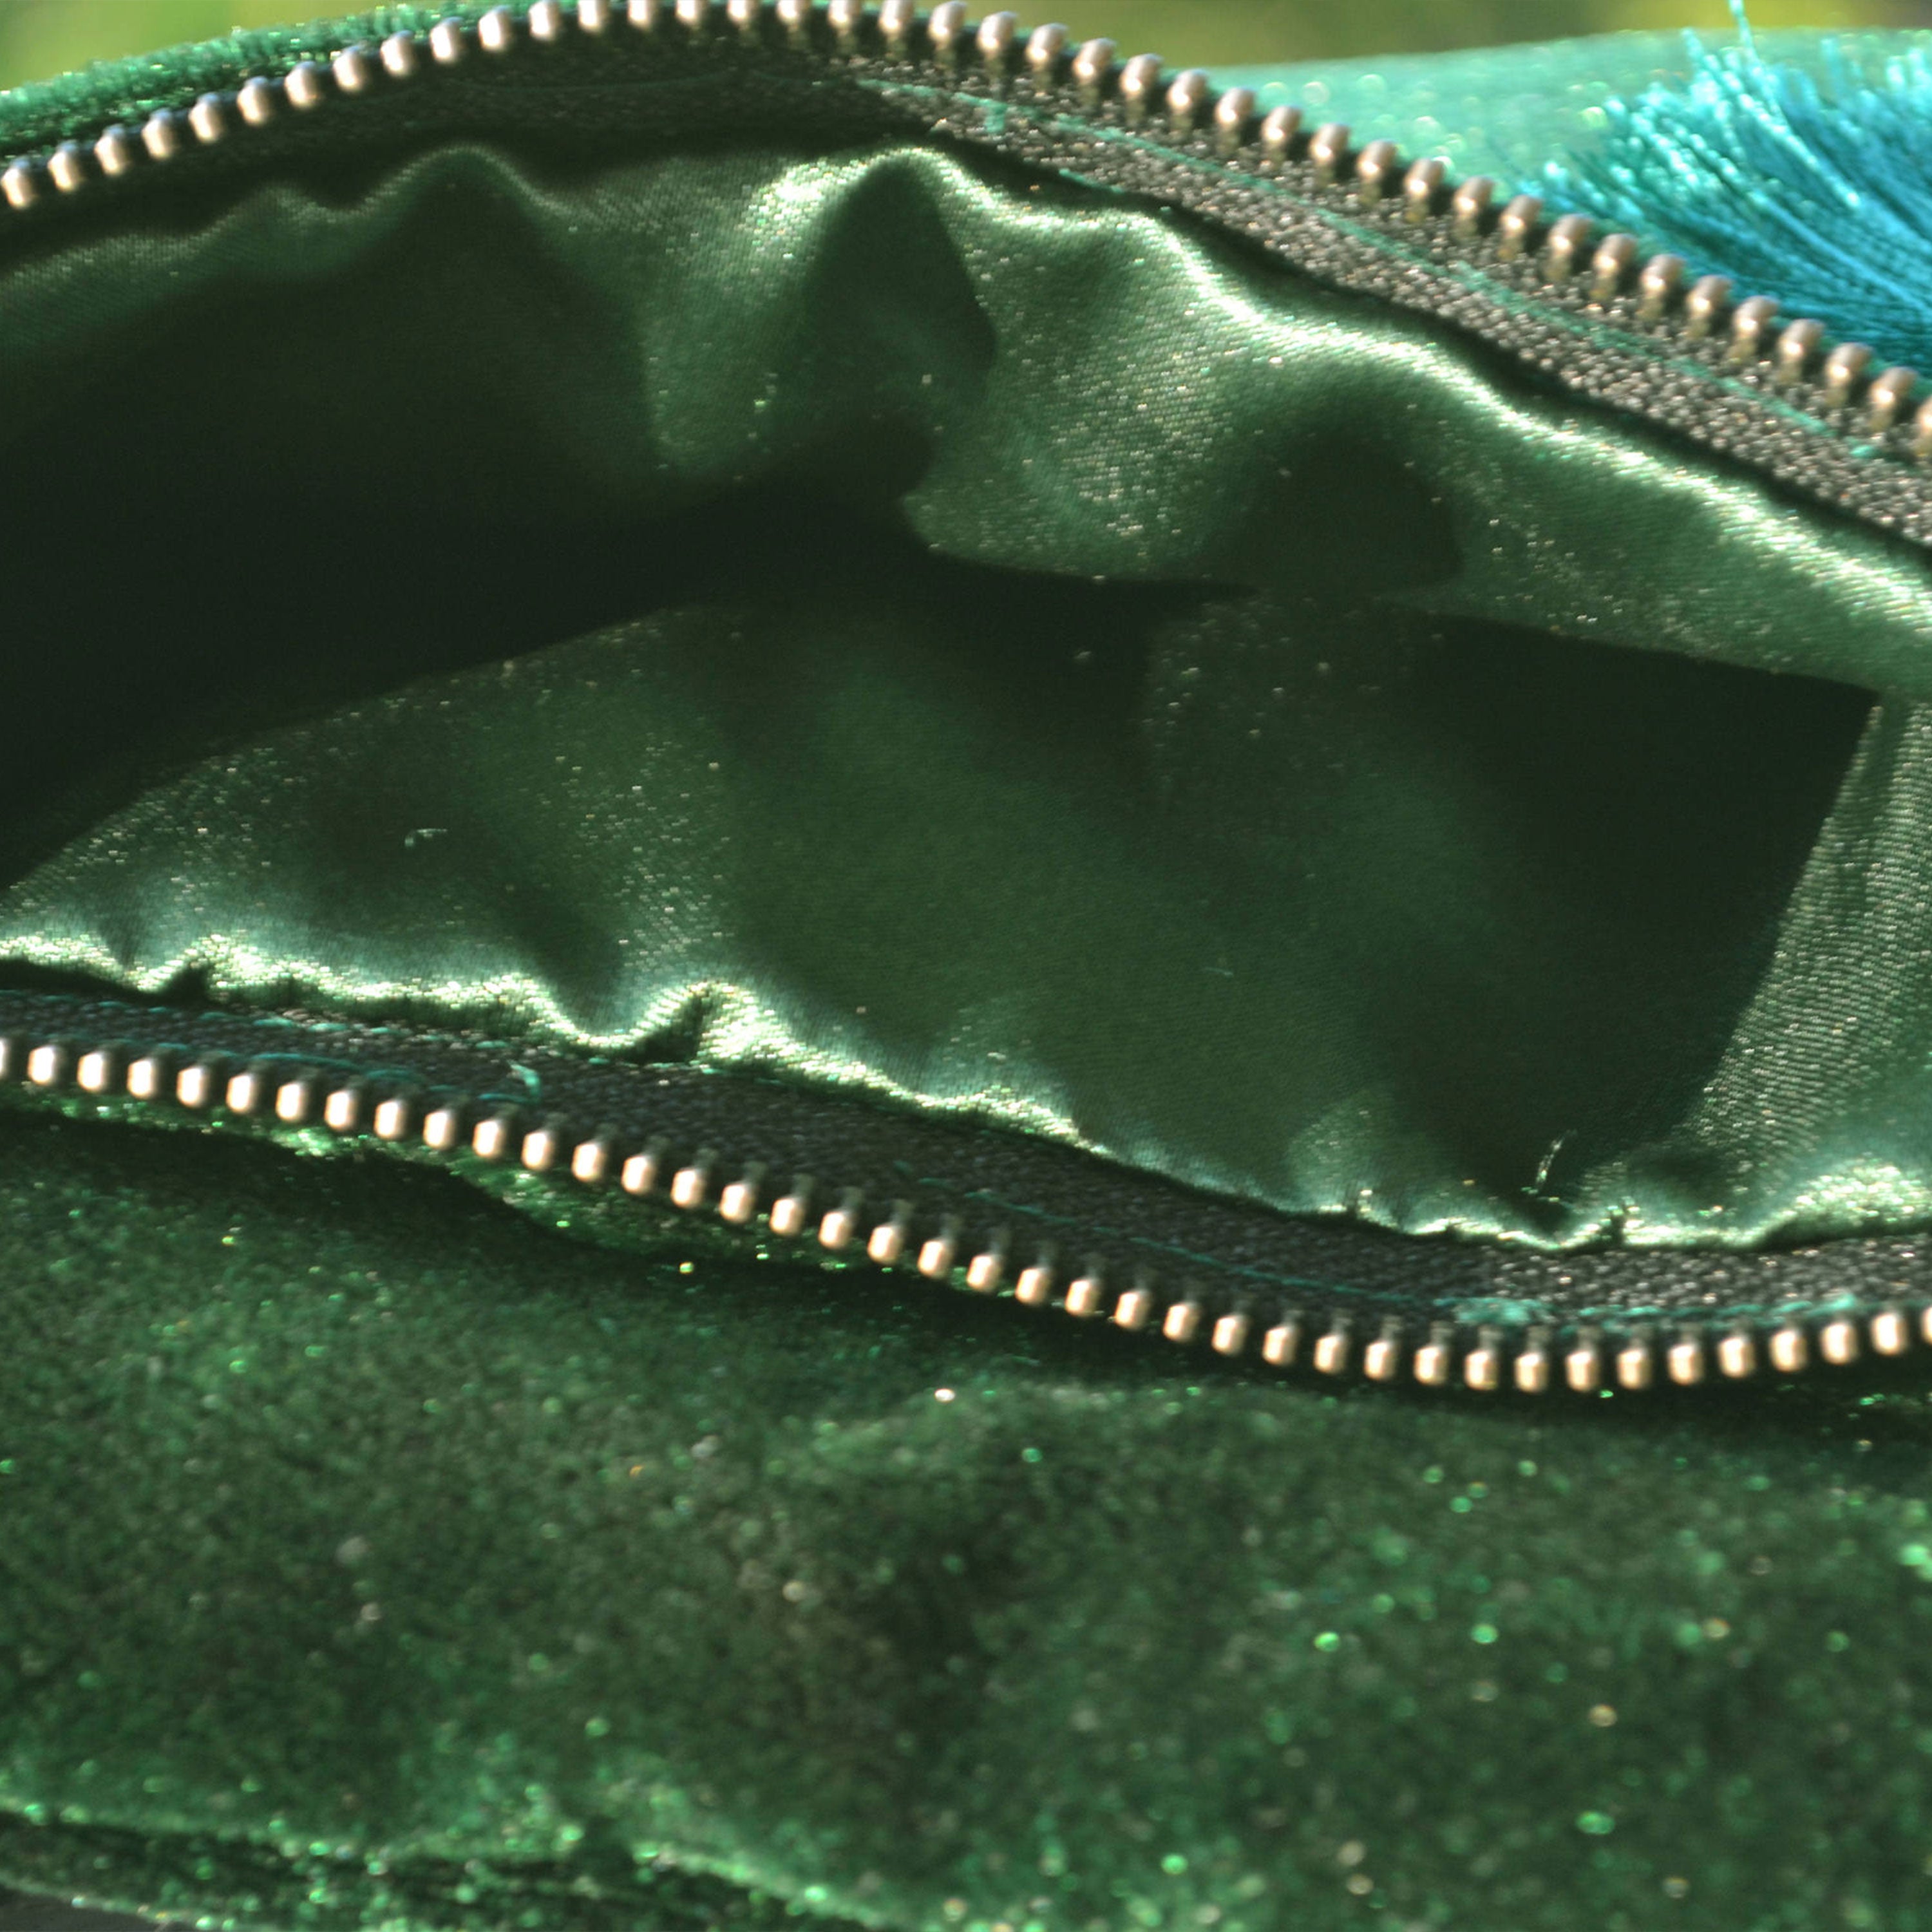 Velvet Clutch, Emerald Green Foldover Bag